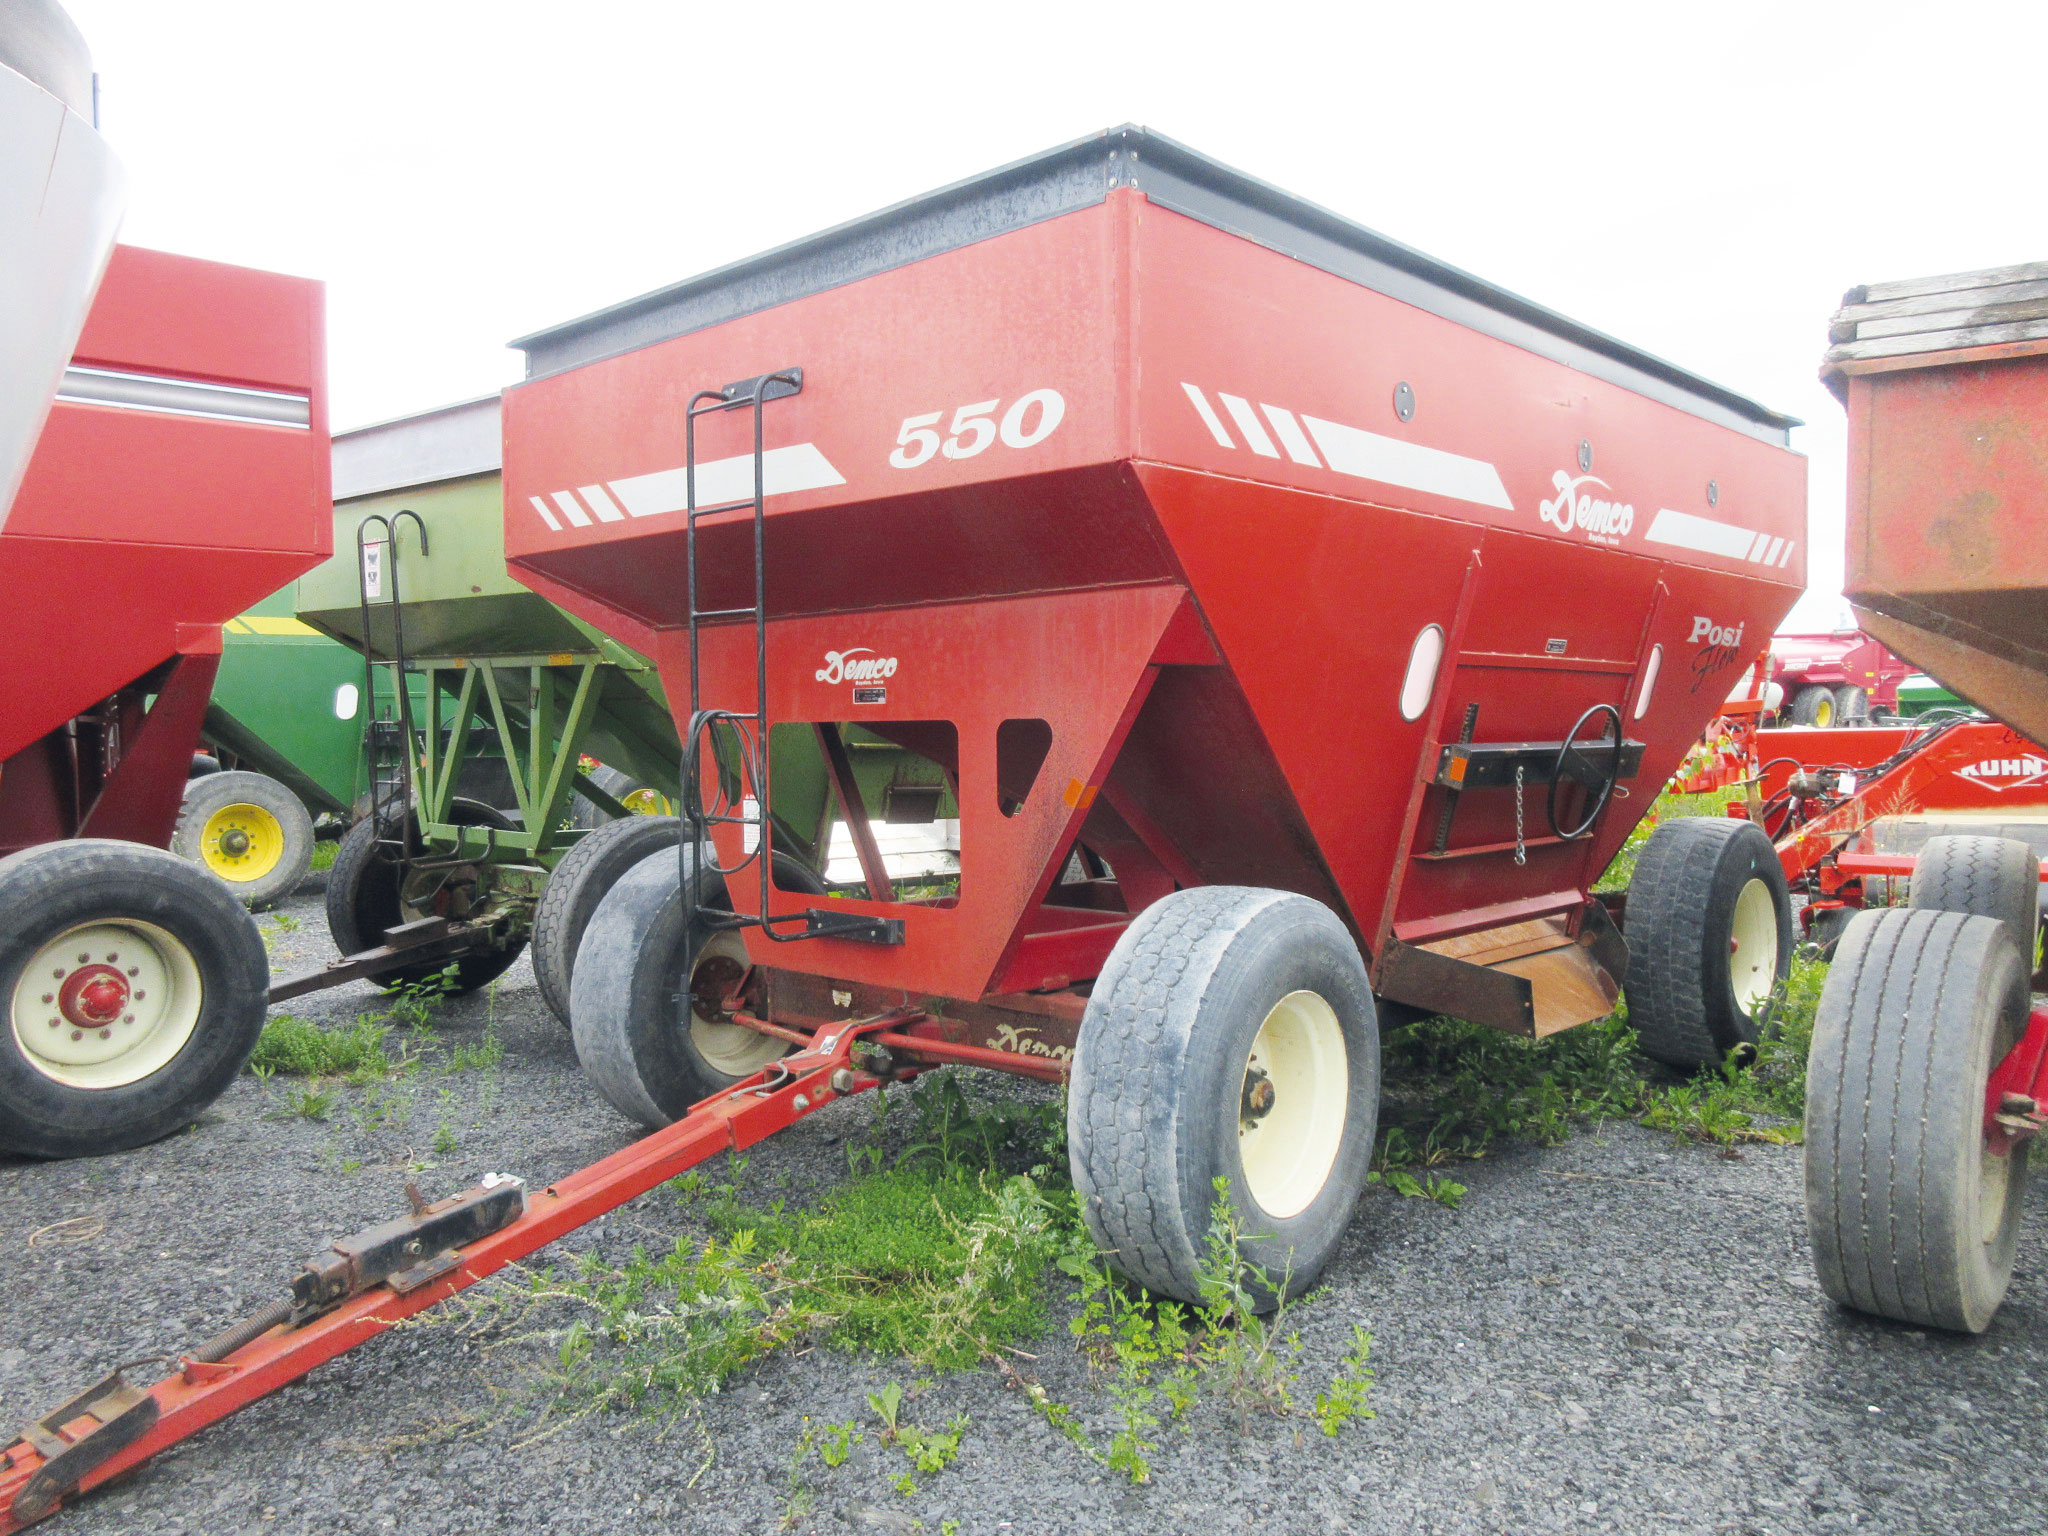 Grain trailer Demco 550